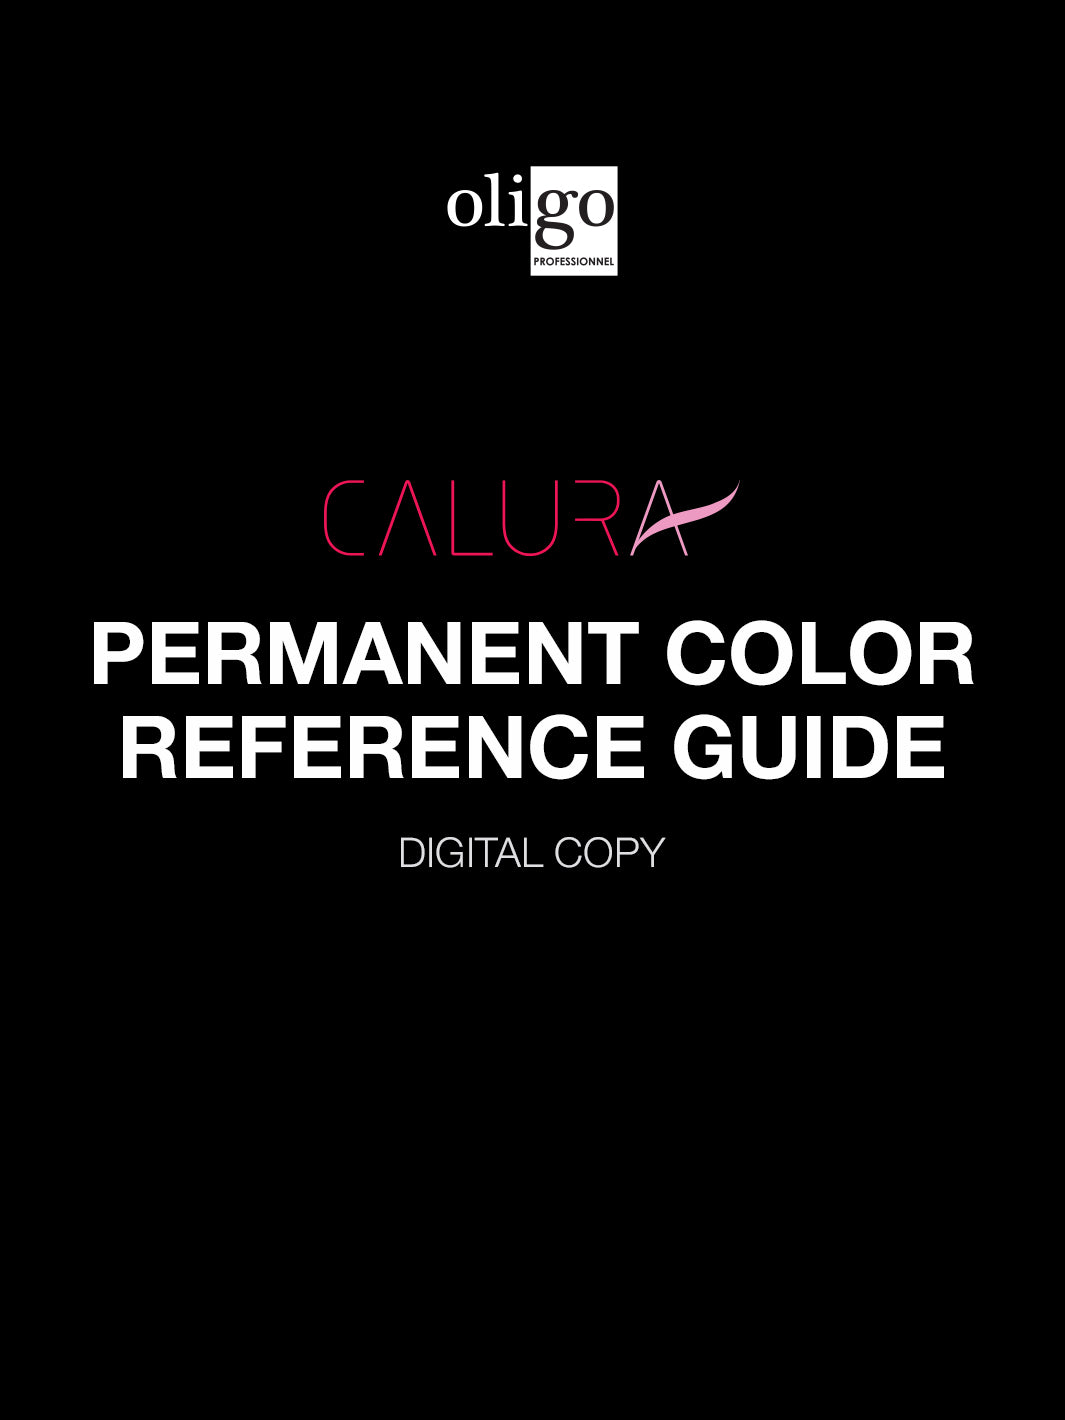 Oligo Calura Permanent Color Reference 1 Pager (digital copy)